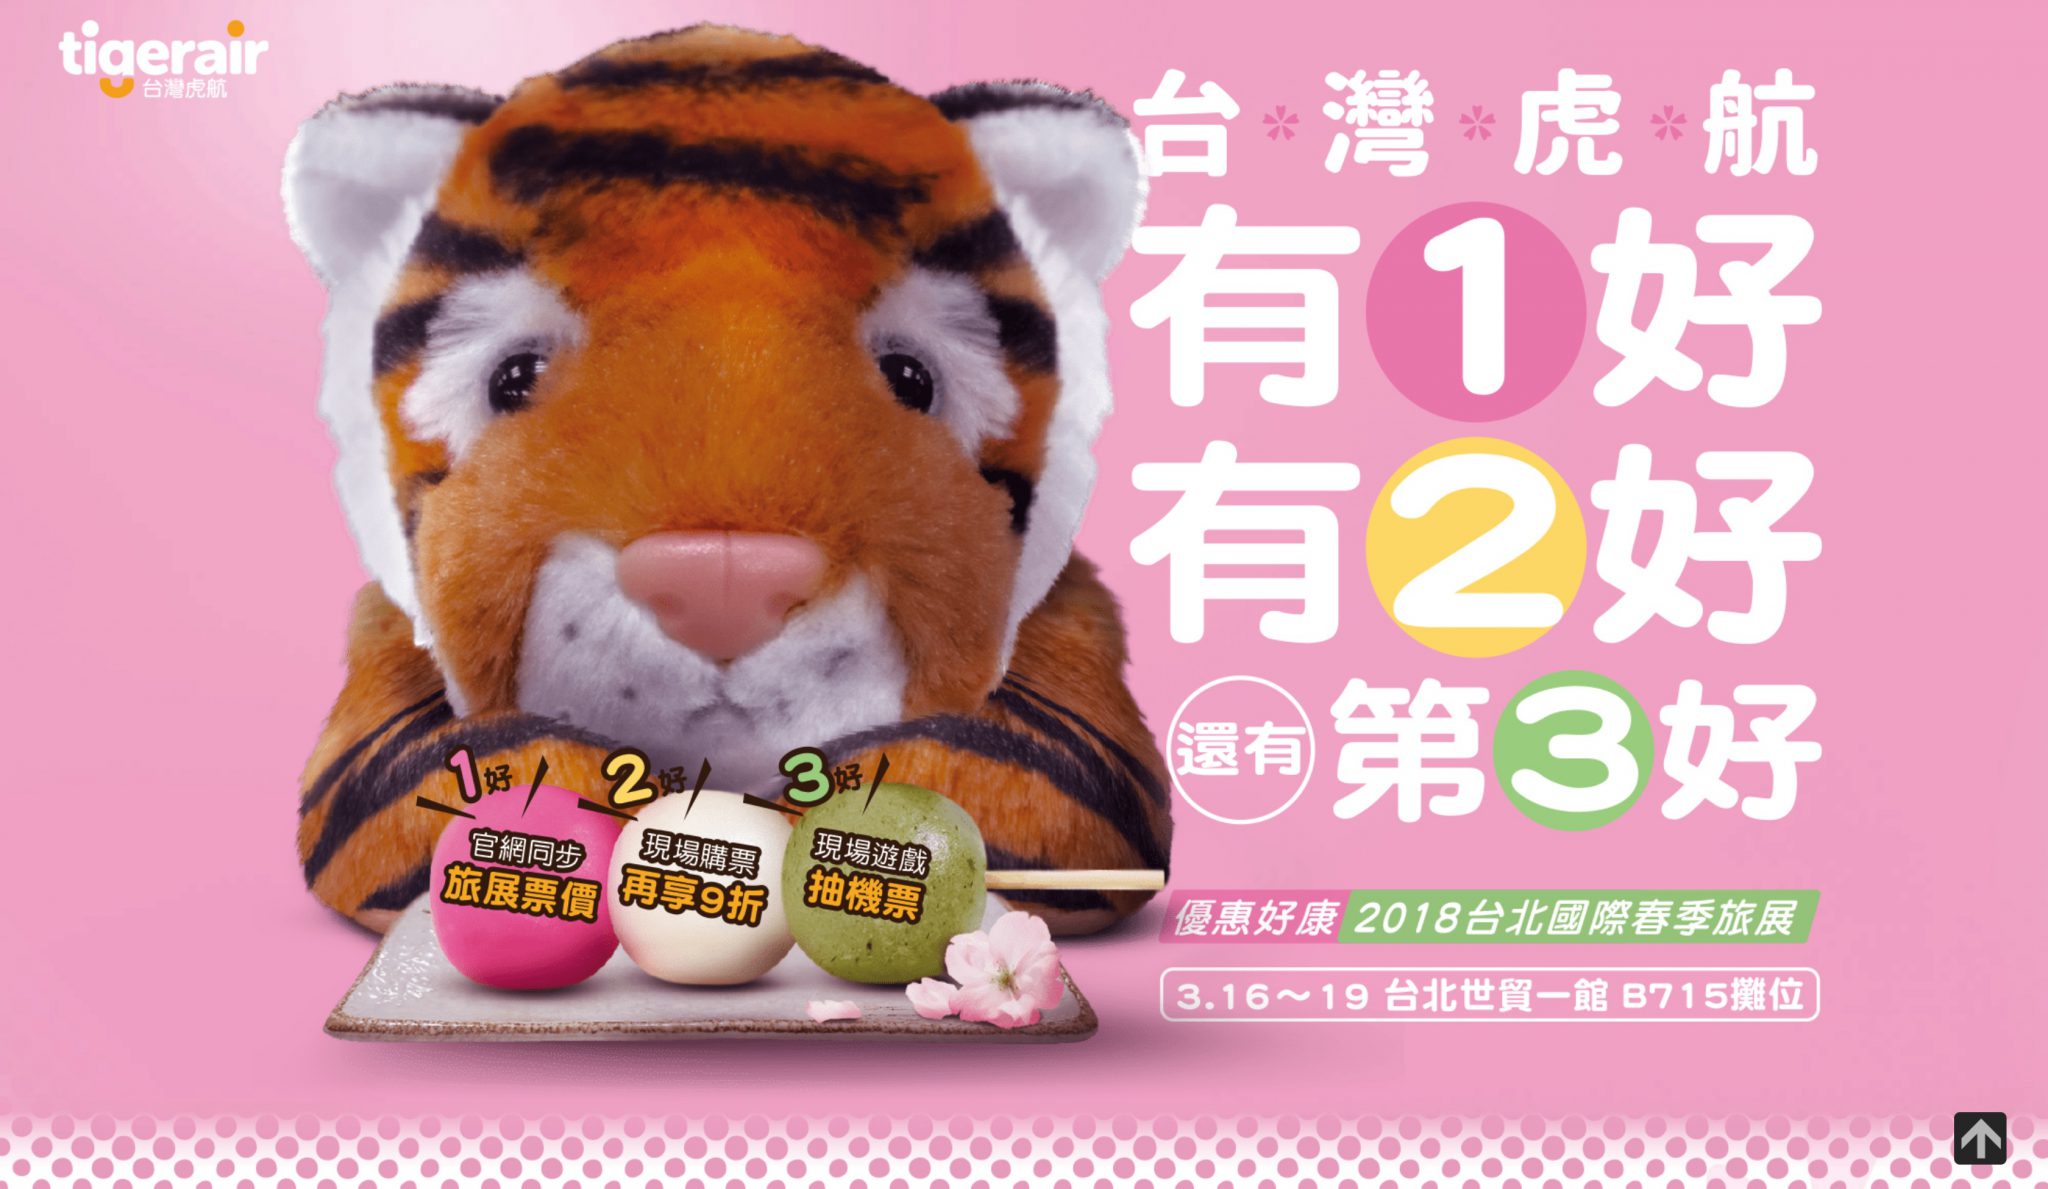 台灣虎航「白色情人節+春季旅展」限時700元促銷玩日本